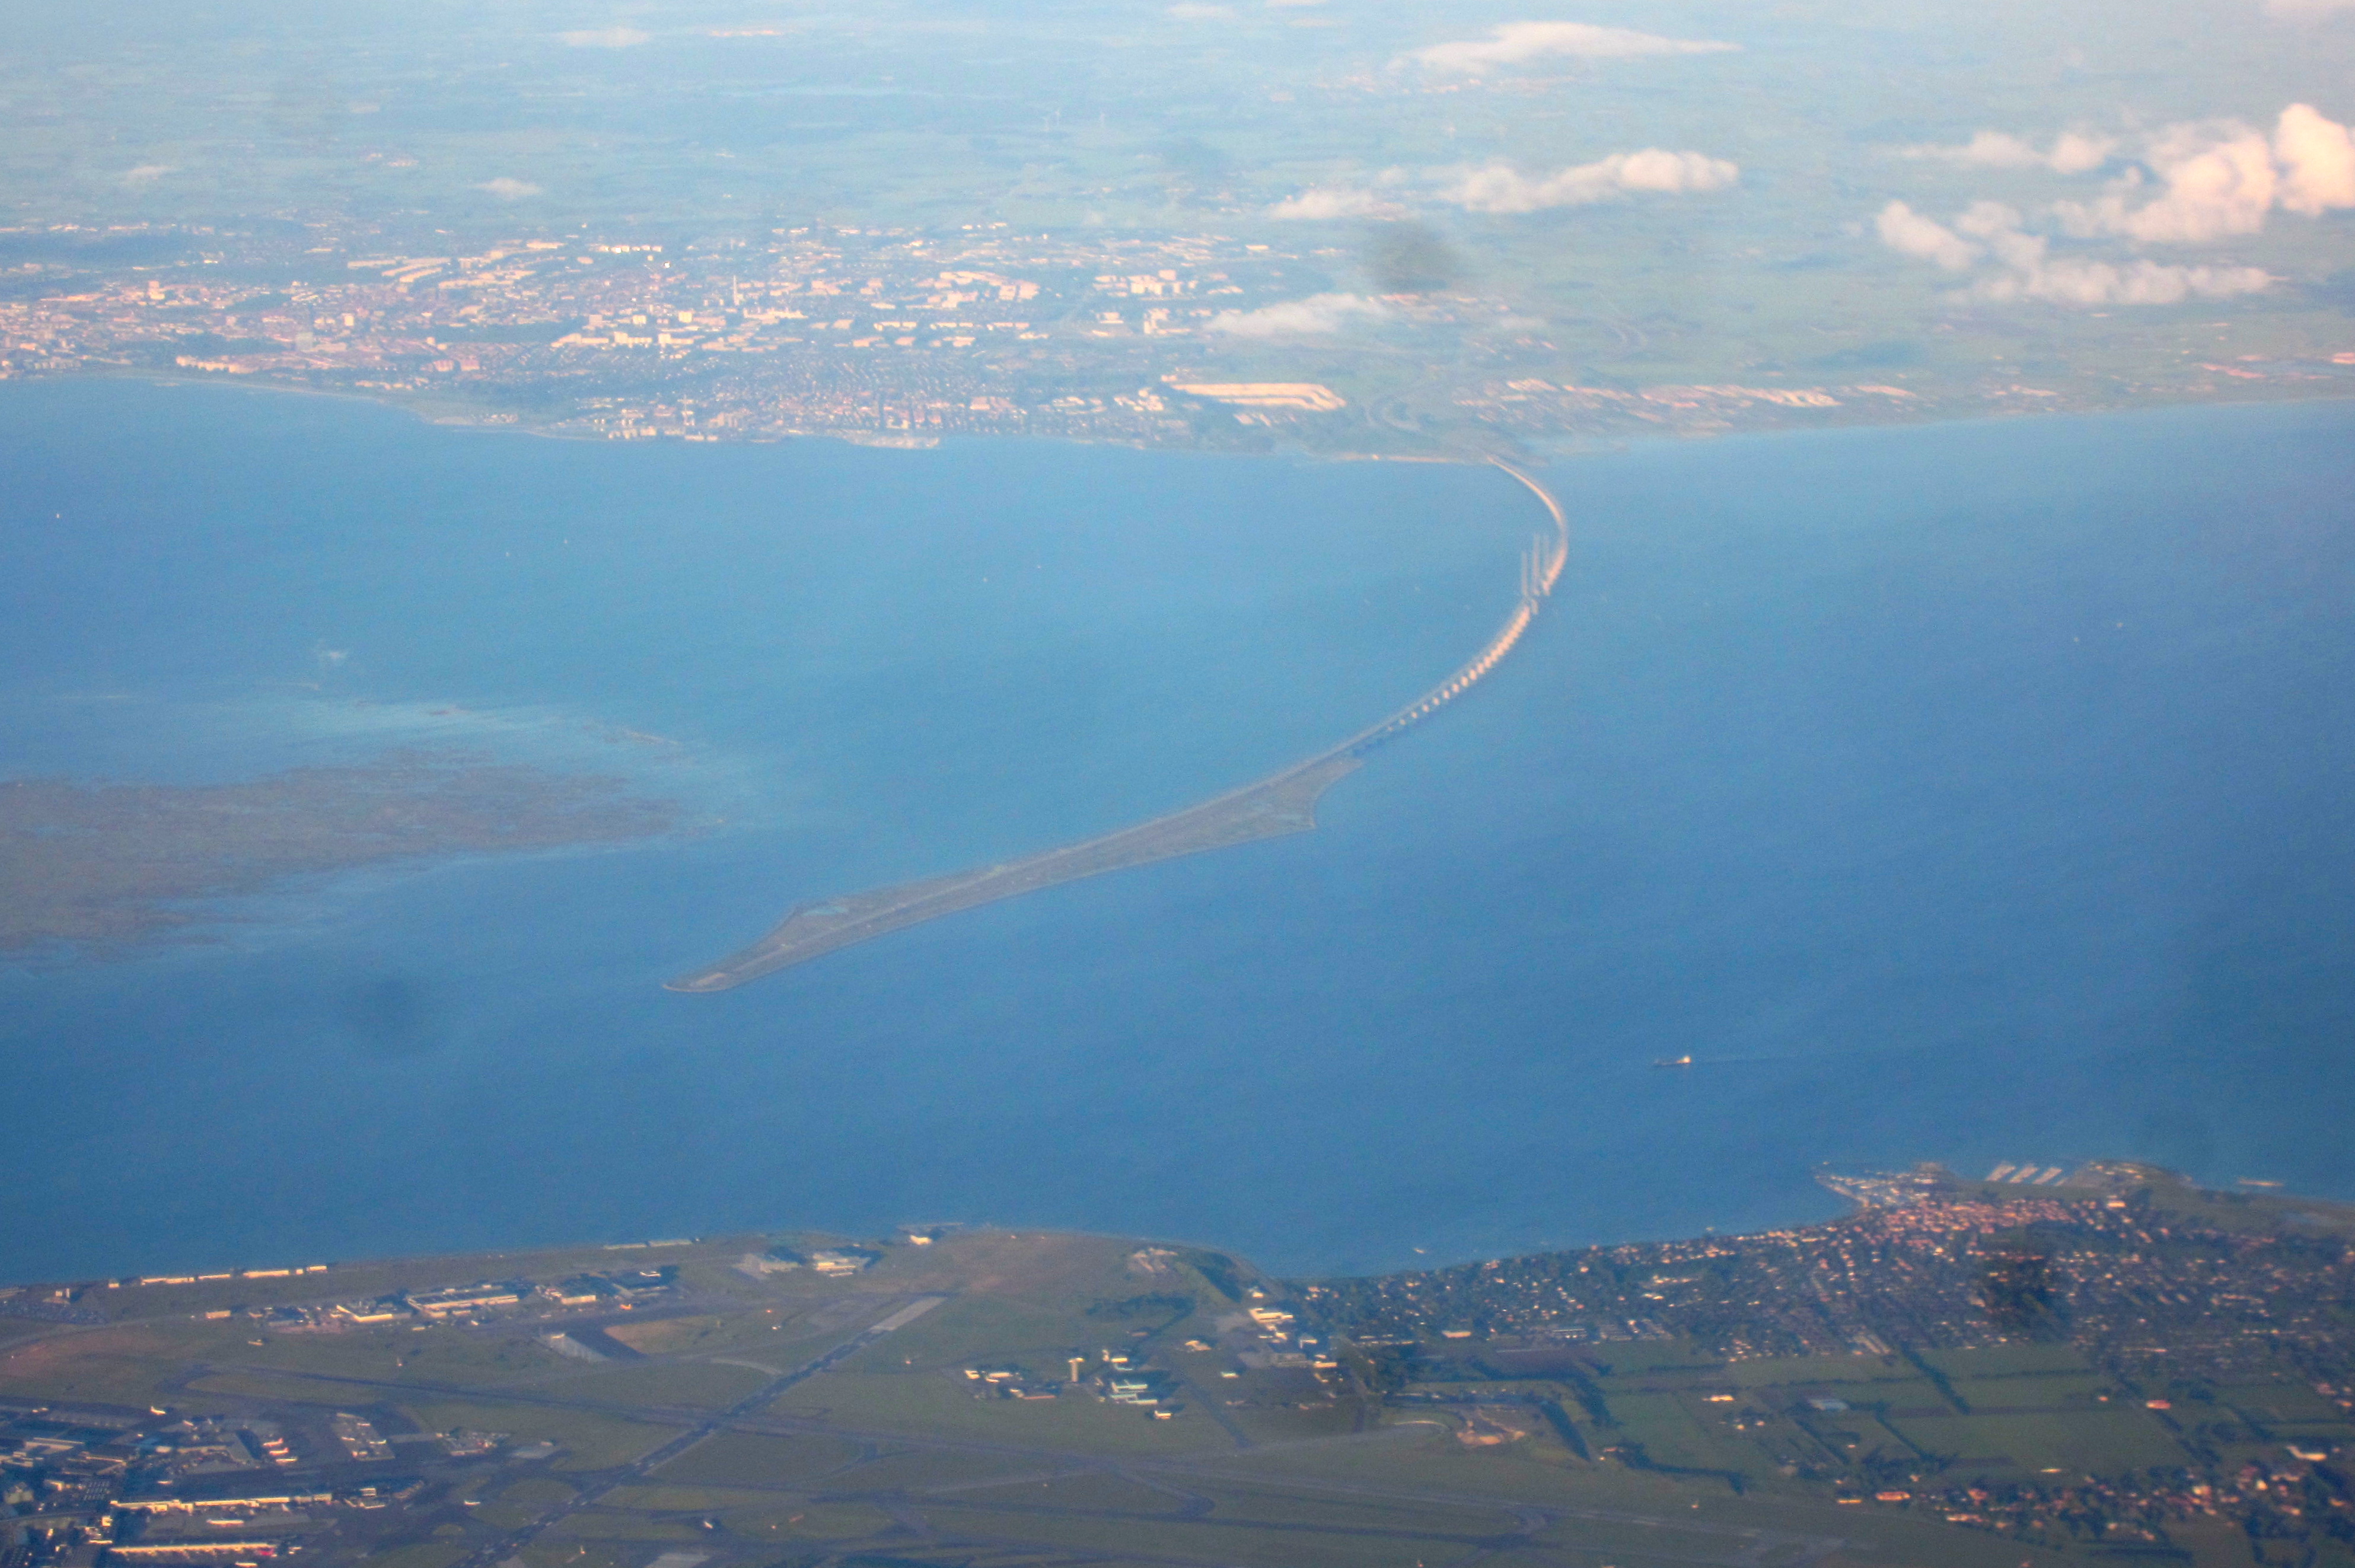 Вид на Эресуннский мост с пассажирского самолета, летящего в Копенгаген. Источник https://upload.wikimedia.org/